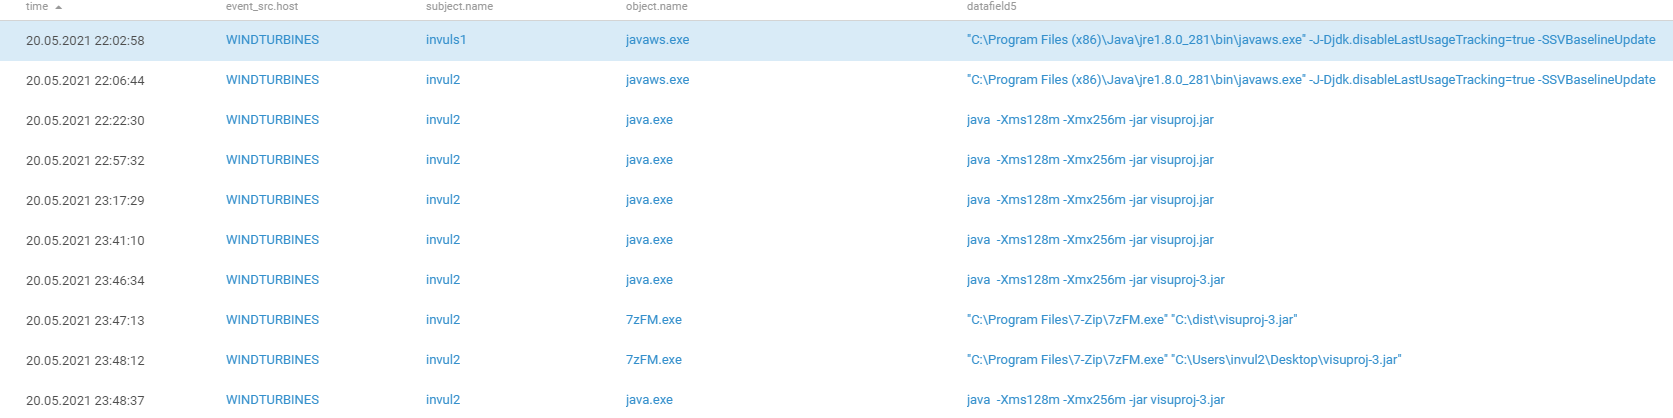 Запуск, архивирование, копирование и перезапуск программы visuproj.jar